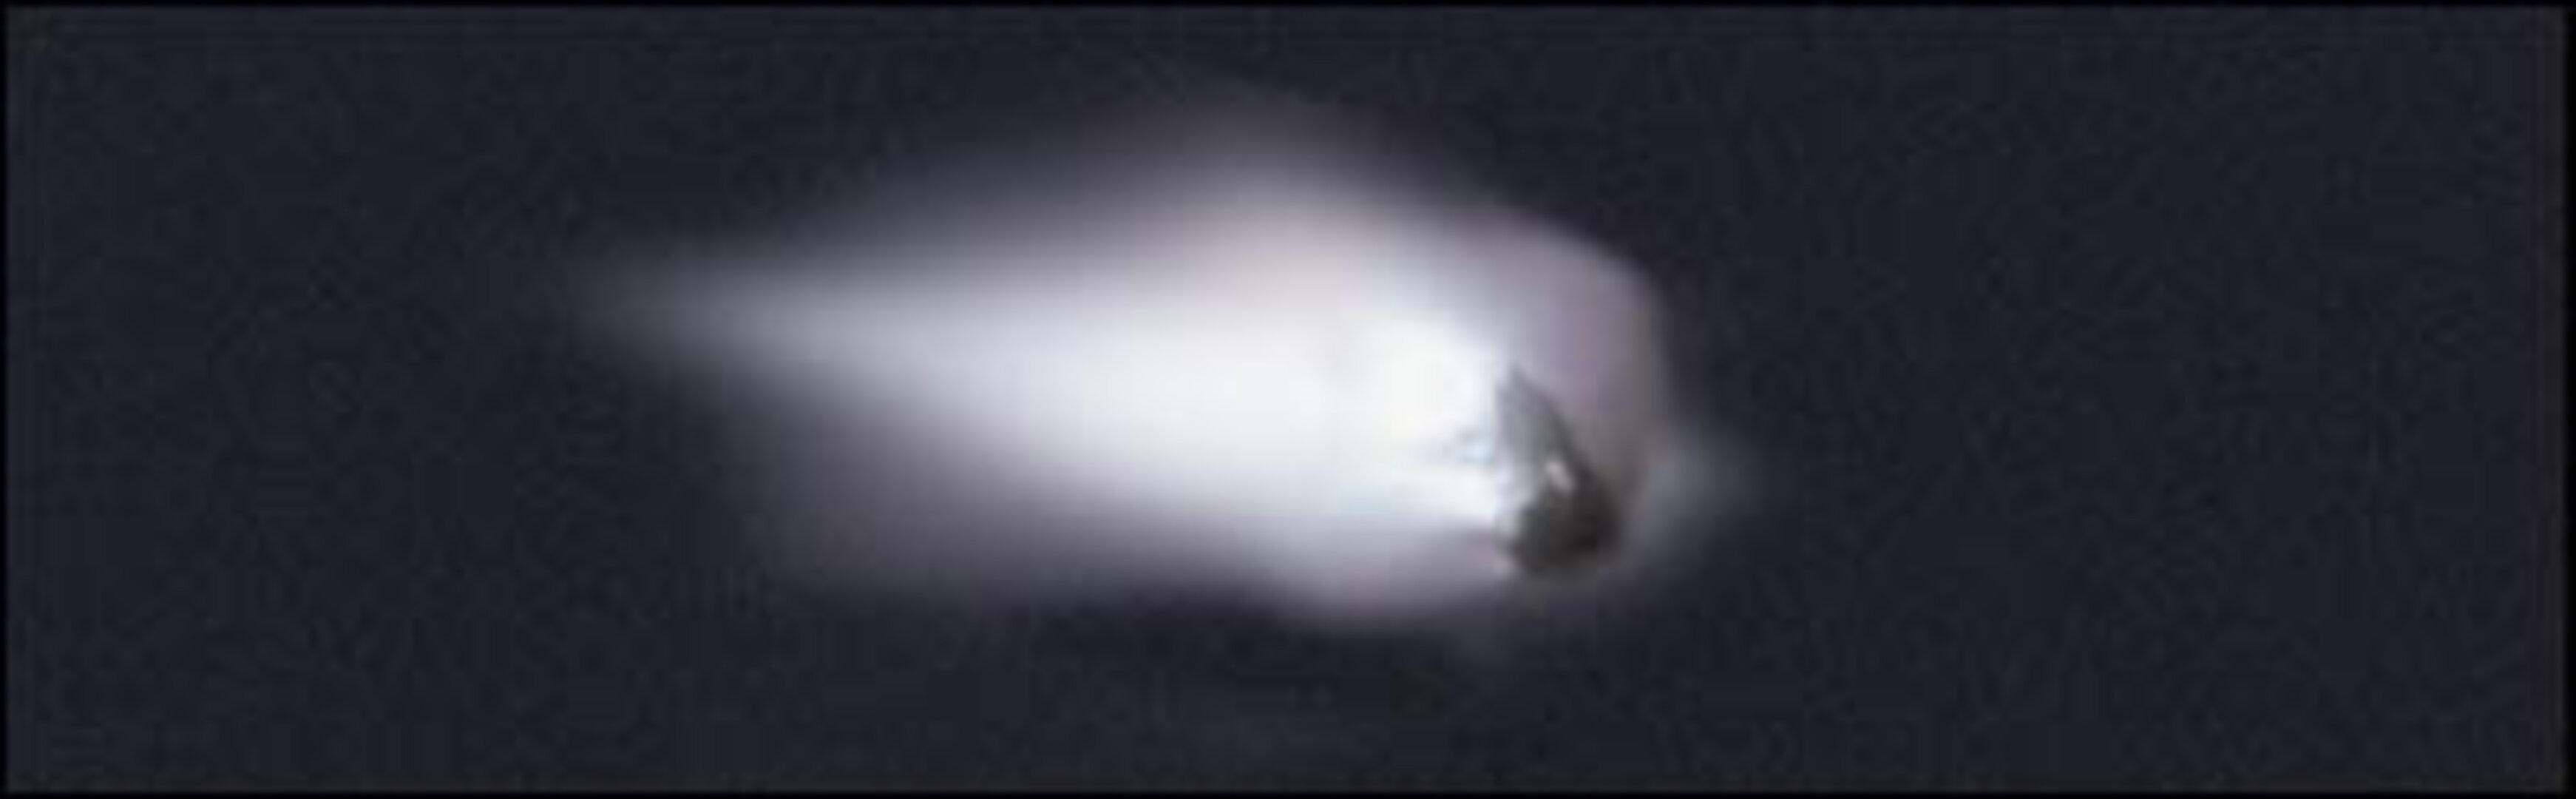 Der Komet Halley nähert sich der Sonne